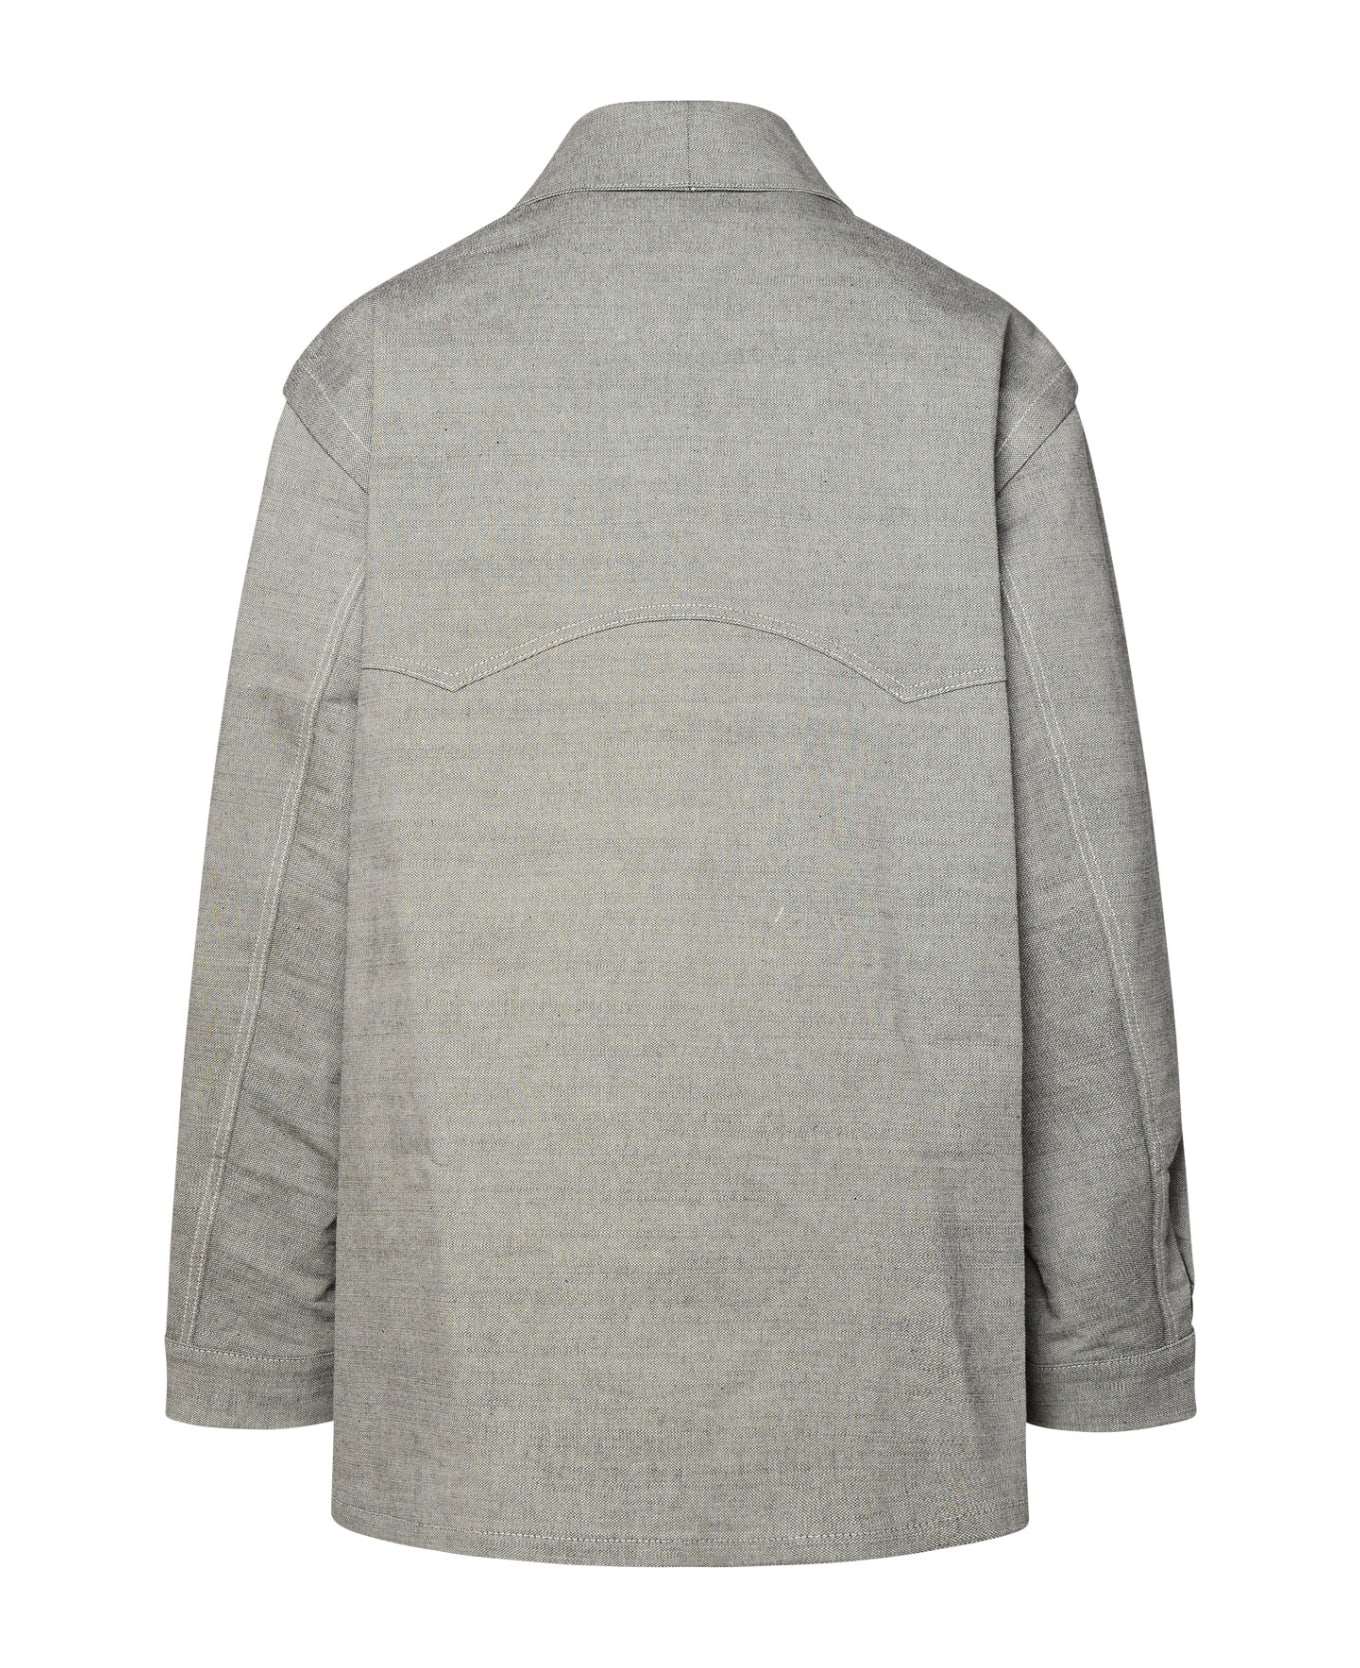 Maison Margiela Grey Cotton Jacket - Grey